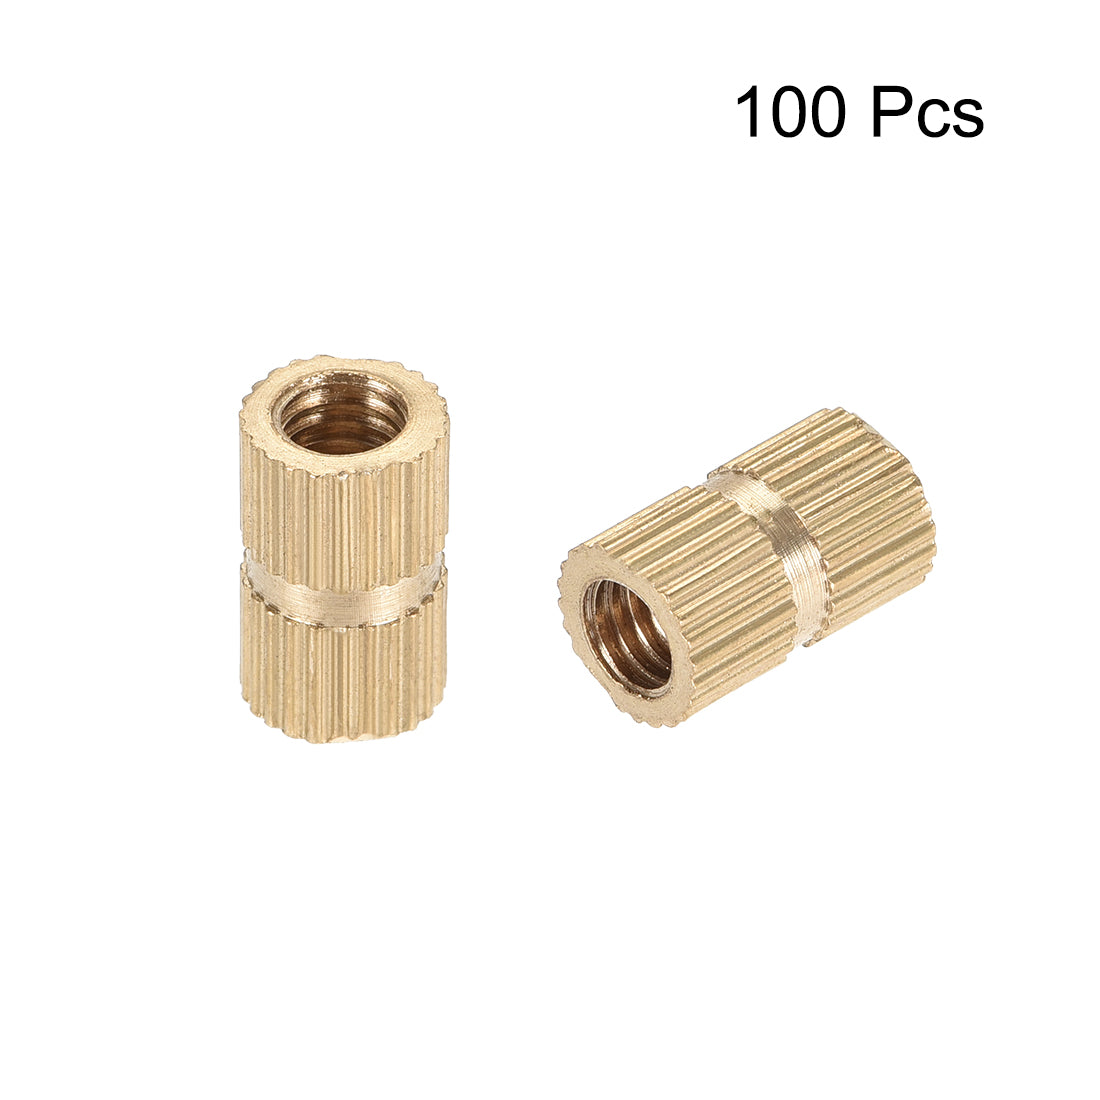 uxcell Uxcell Knurled Insert Nuts, M5 x 12mm(L) x 7mm(OD) Female Thread Brass Embedment Assortment Kit, 100 Pcs